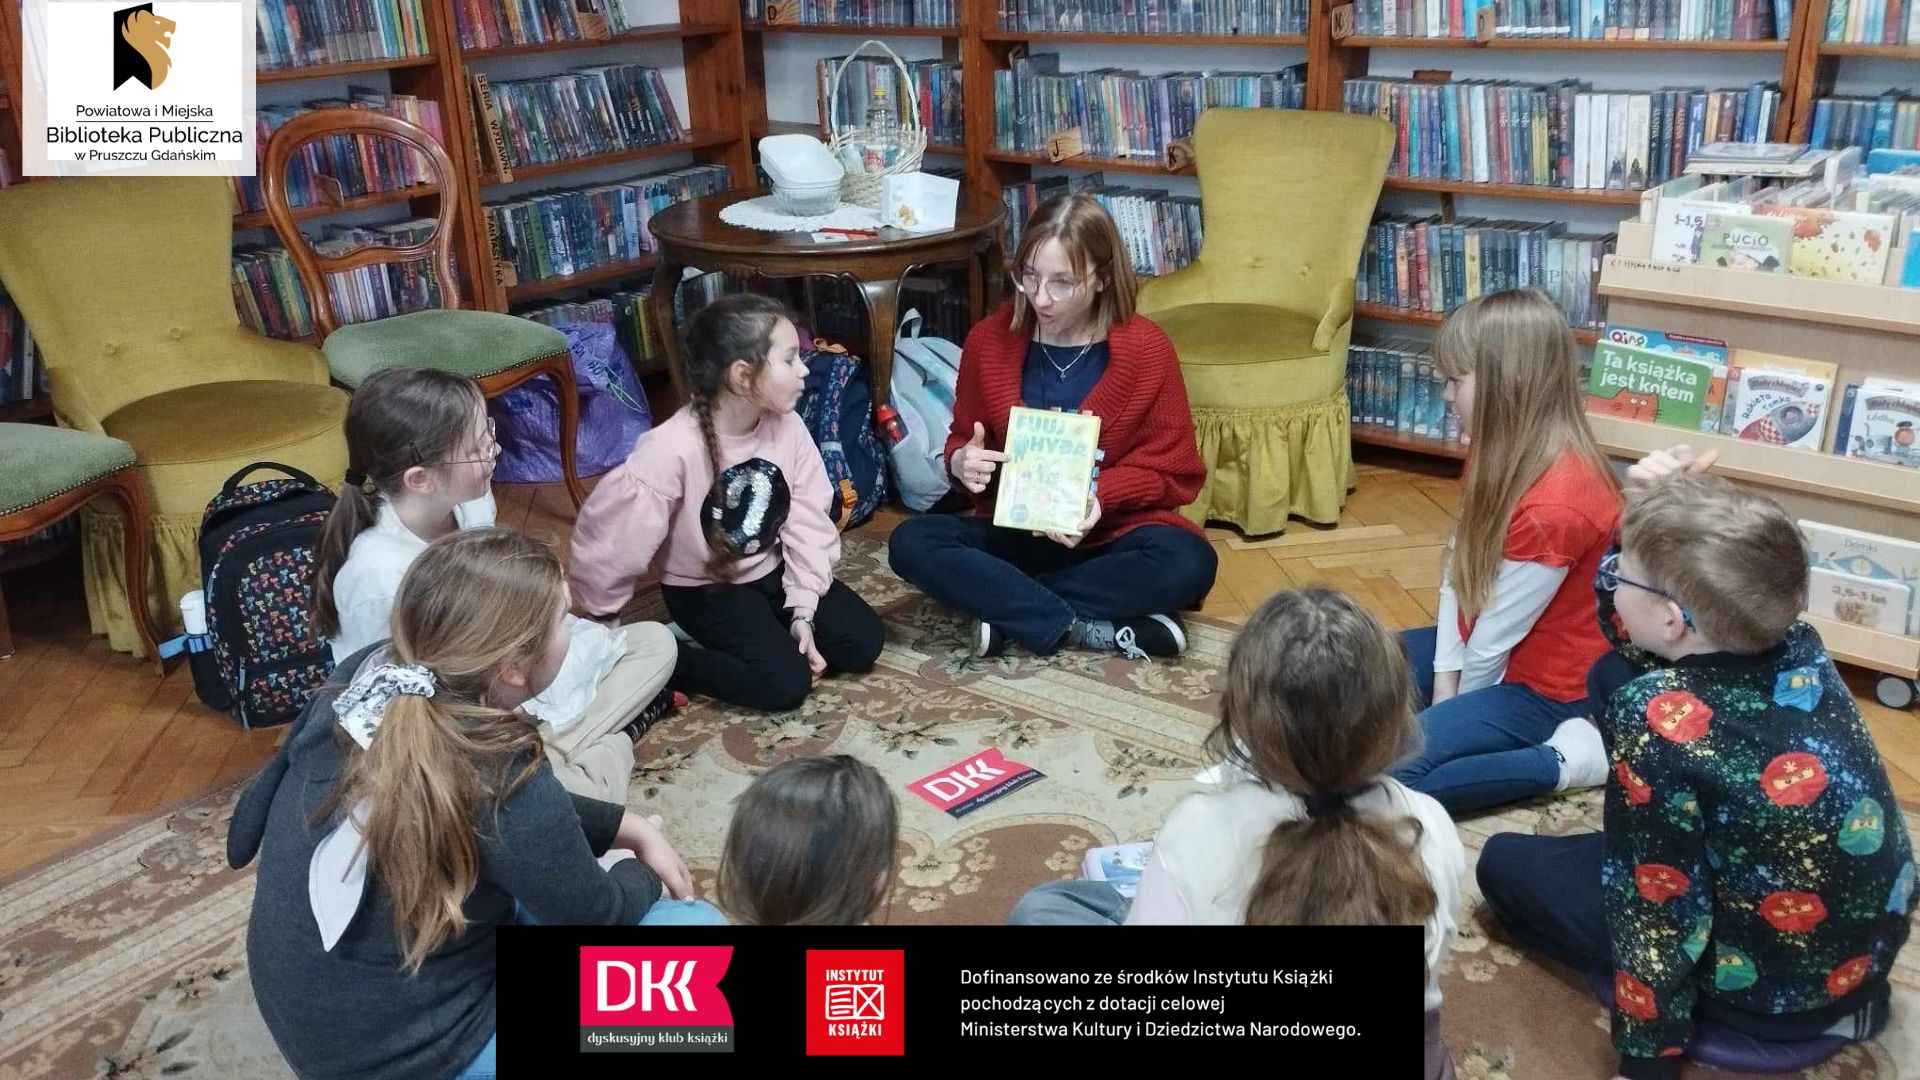 Dzieci i bibliotekarka siedzą na dywanie, w koło. Kobieta prezentuje książkę.